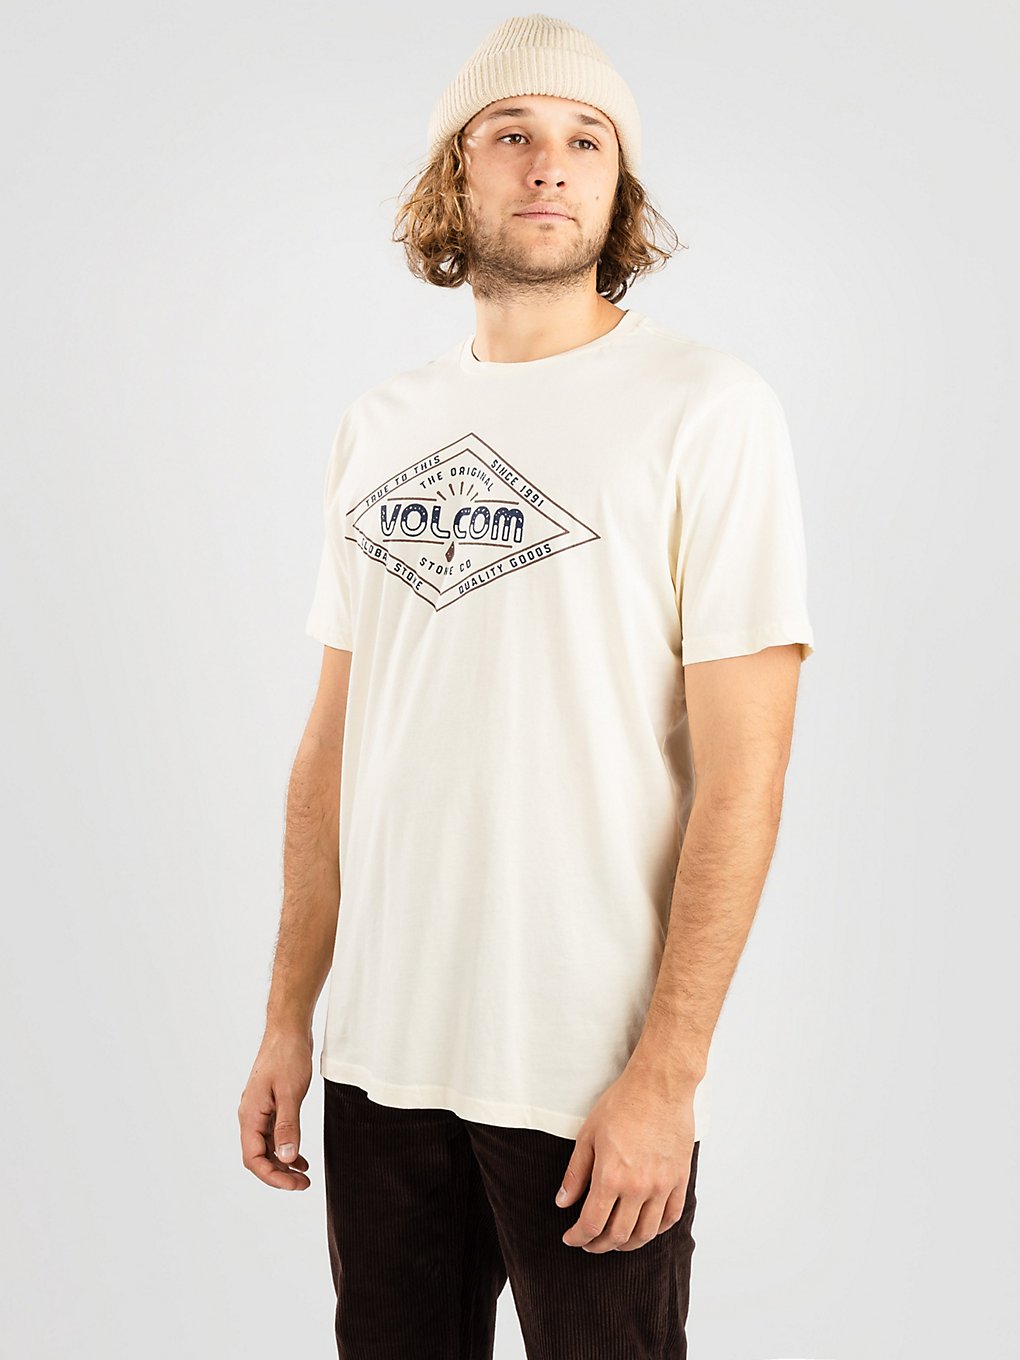 volcom hikendo fty t-shirt off white